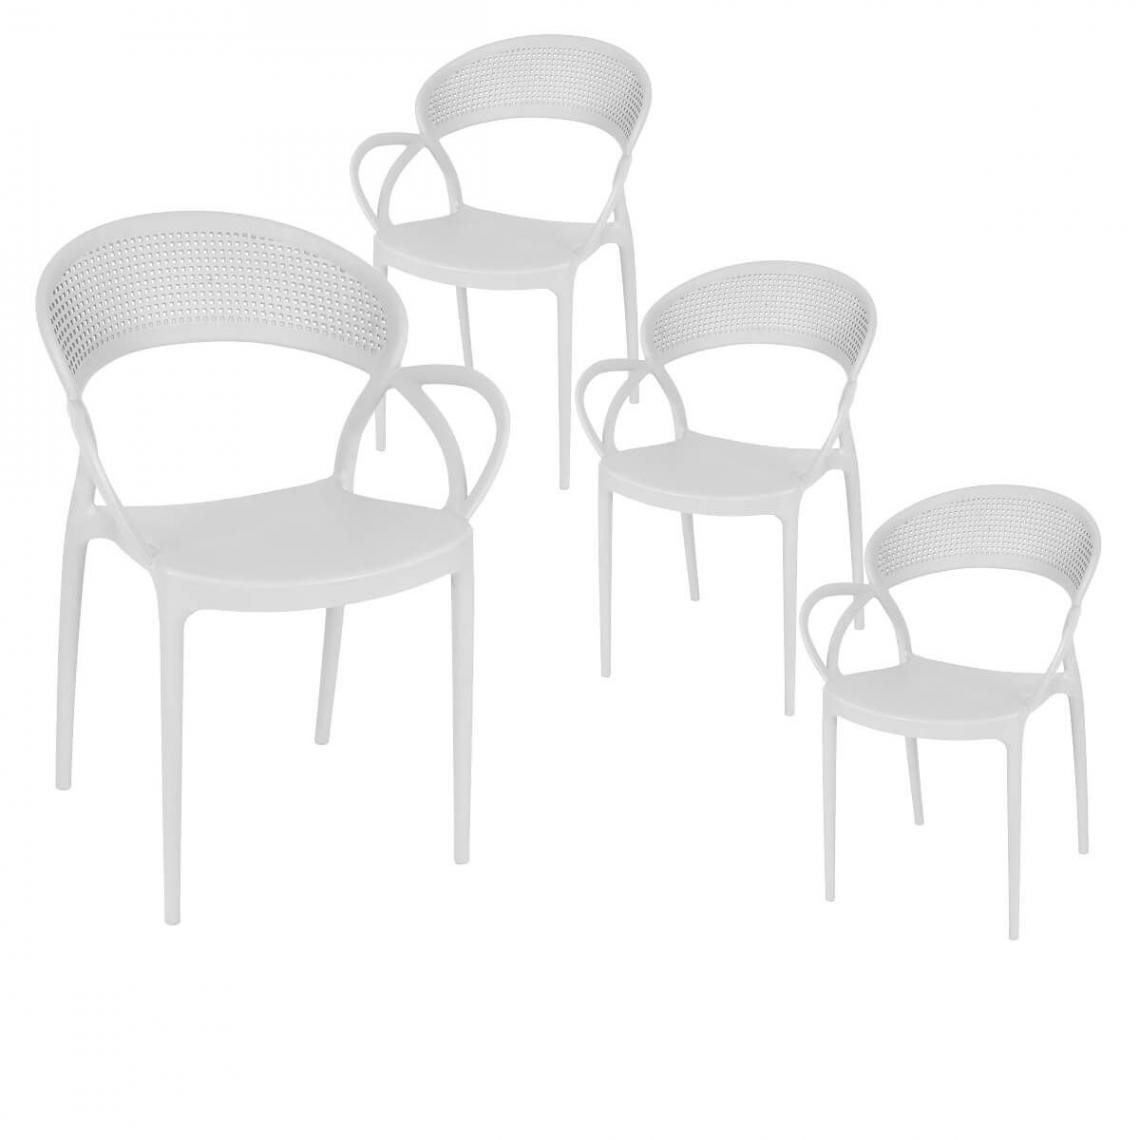 Altobuy - ATHENA - Lot de 4 Chaises de Jardin Plastique Blanc - Chaises